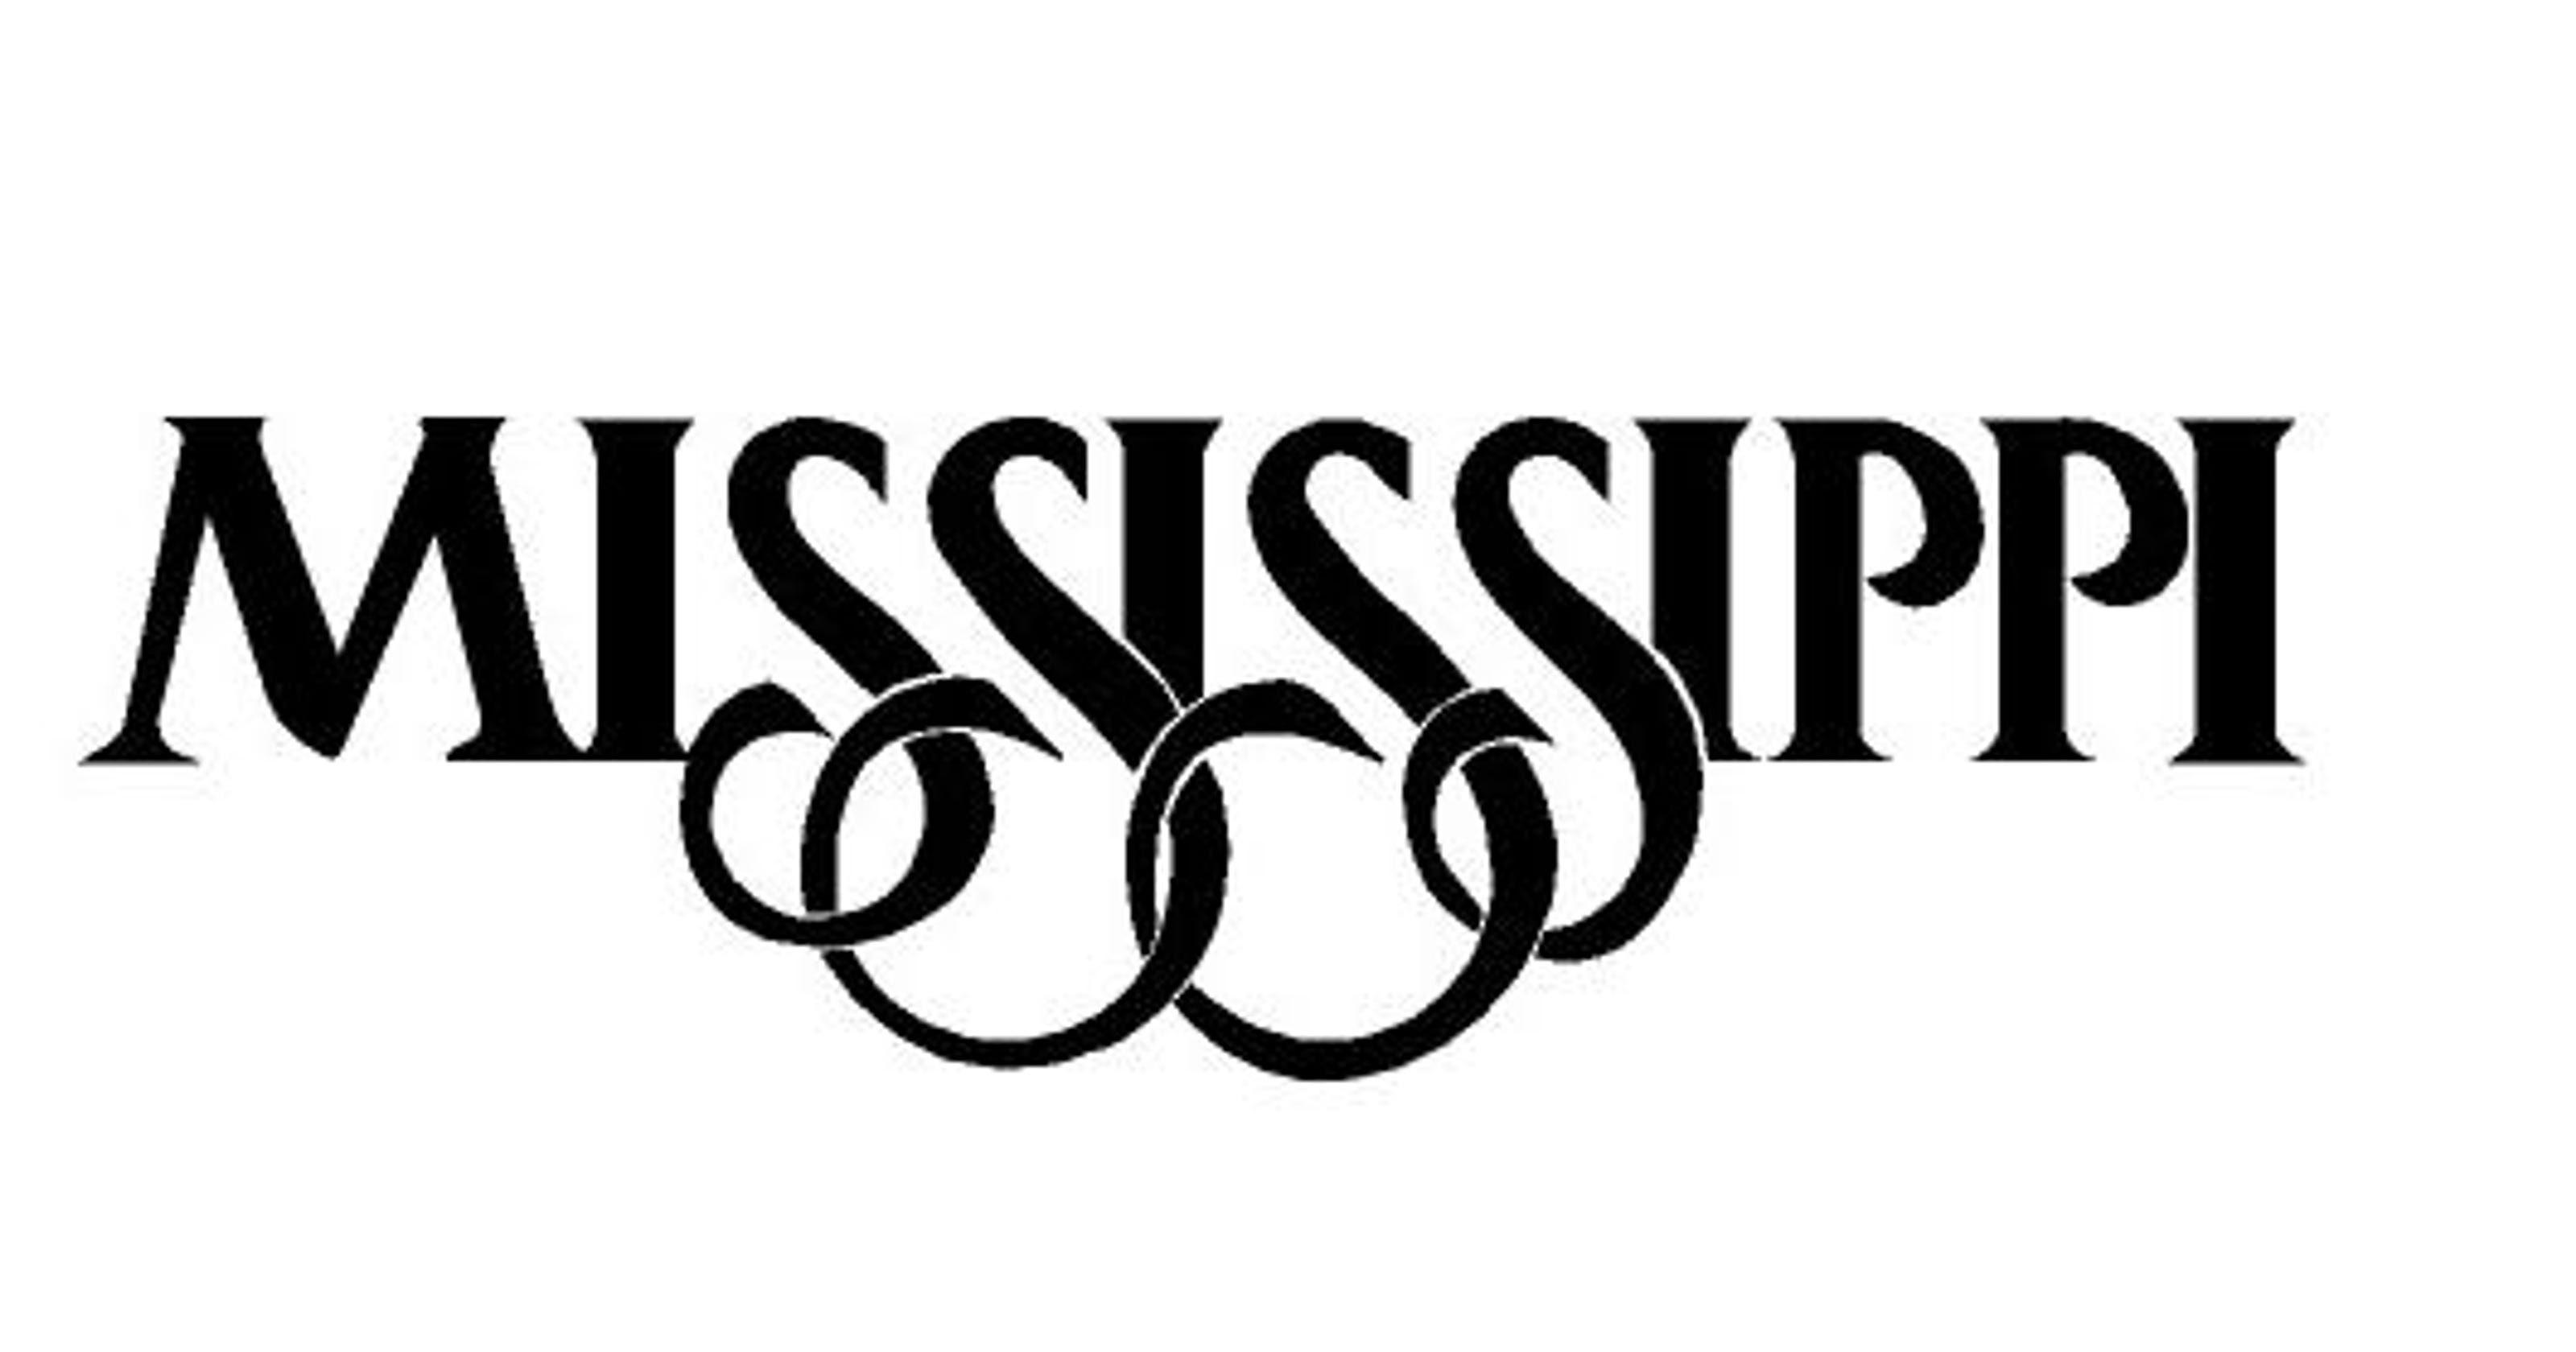 Mississippi Logo